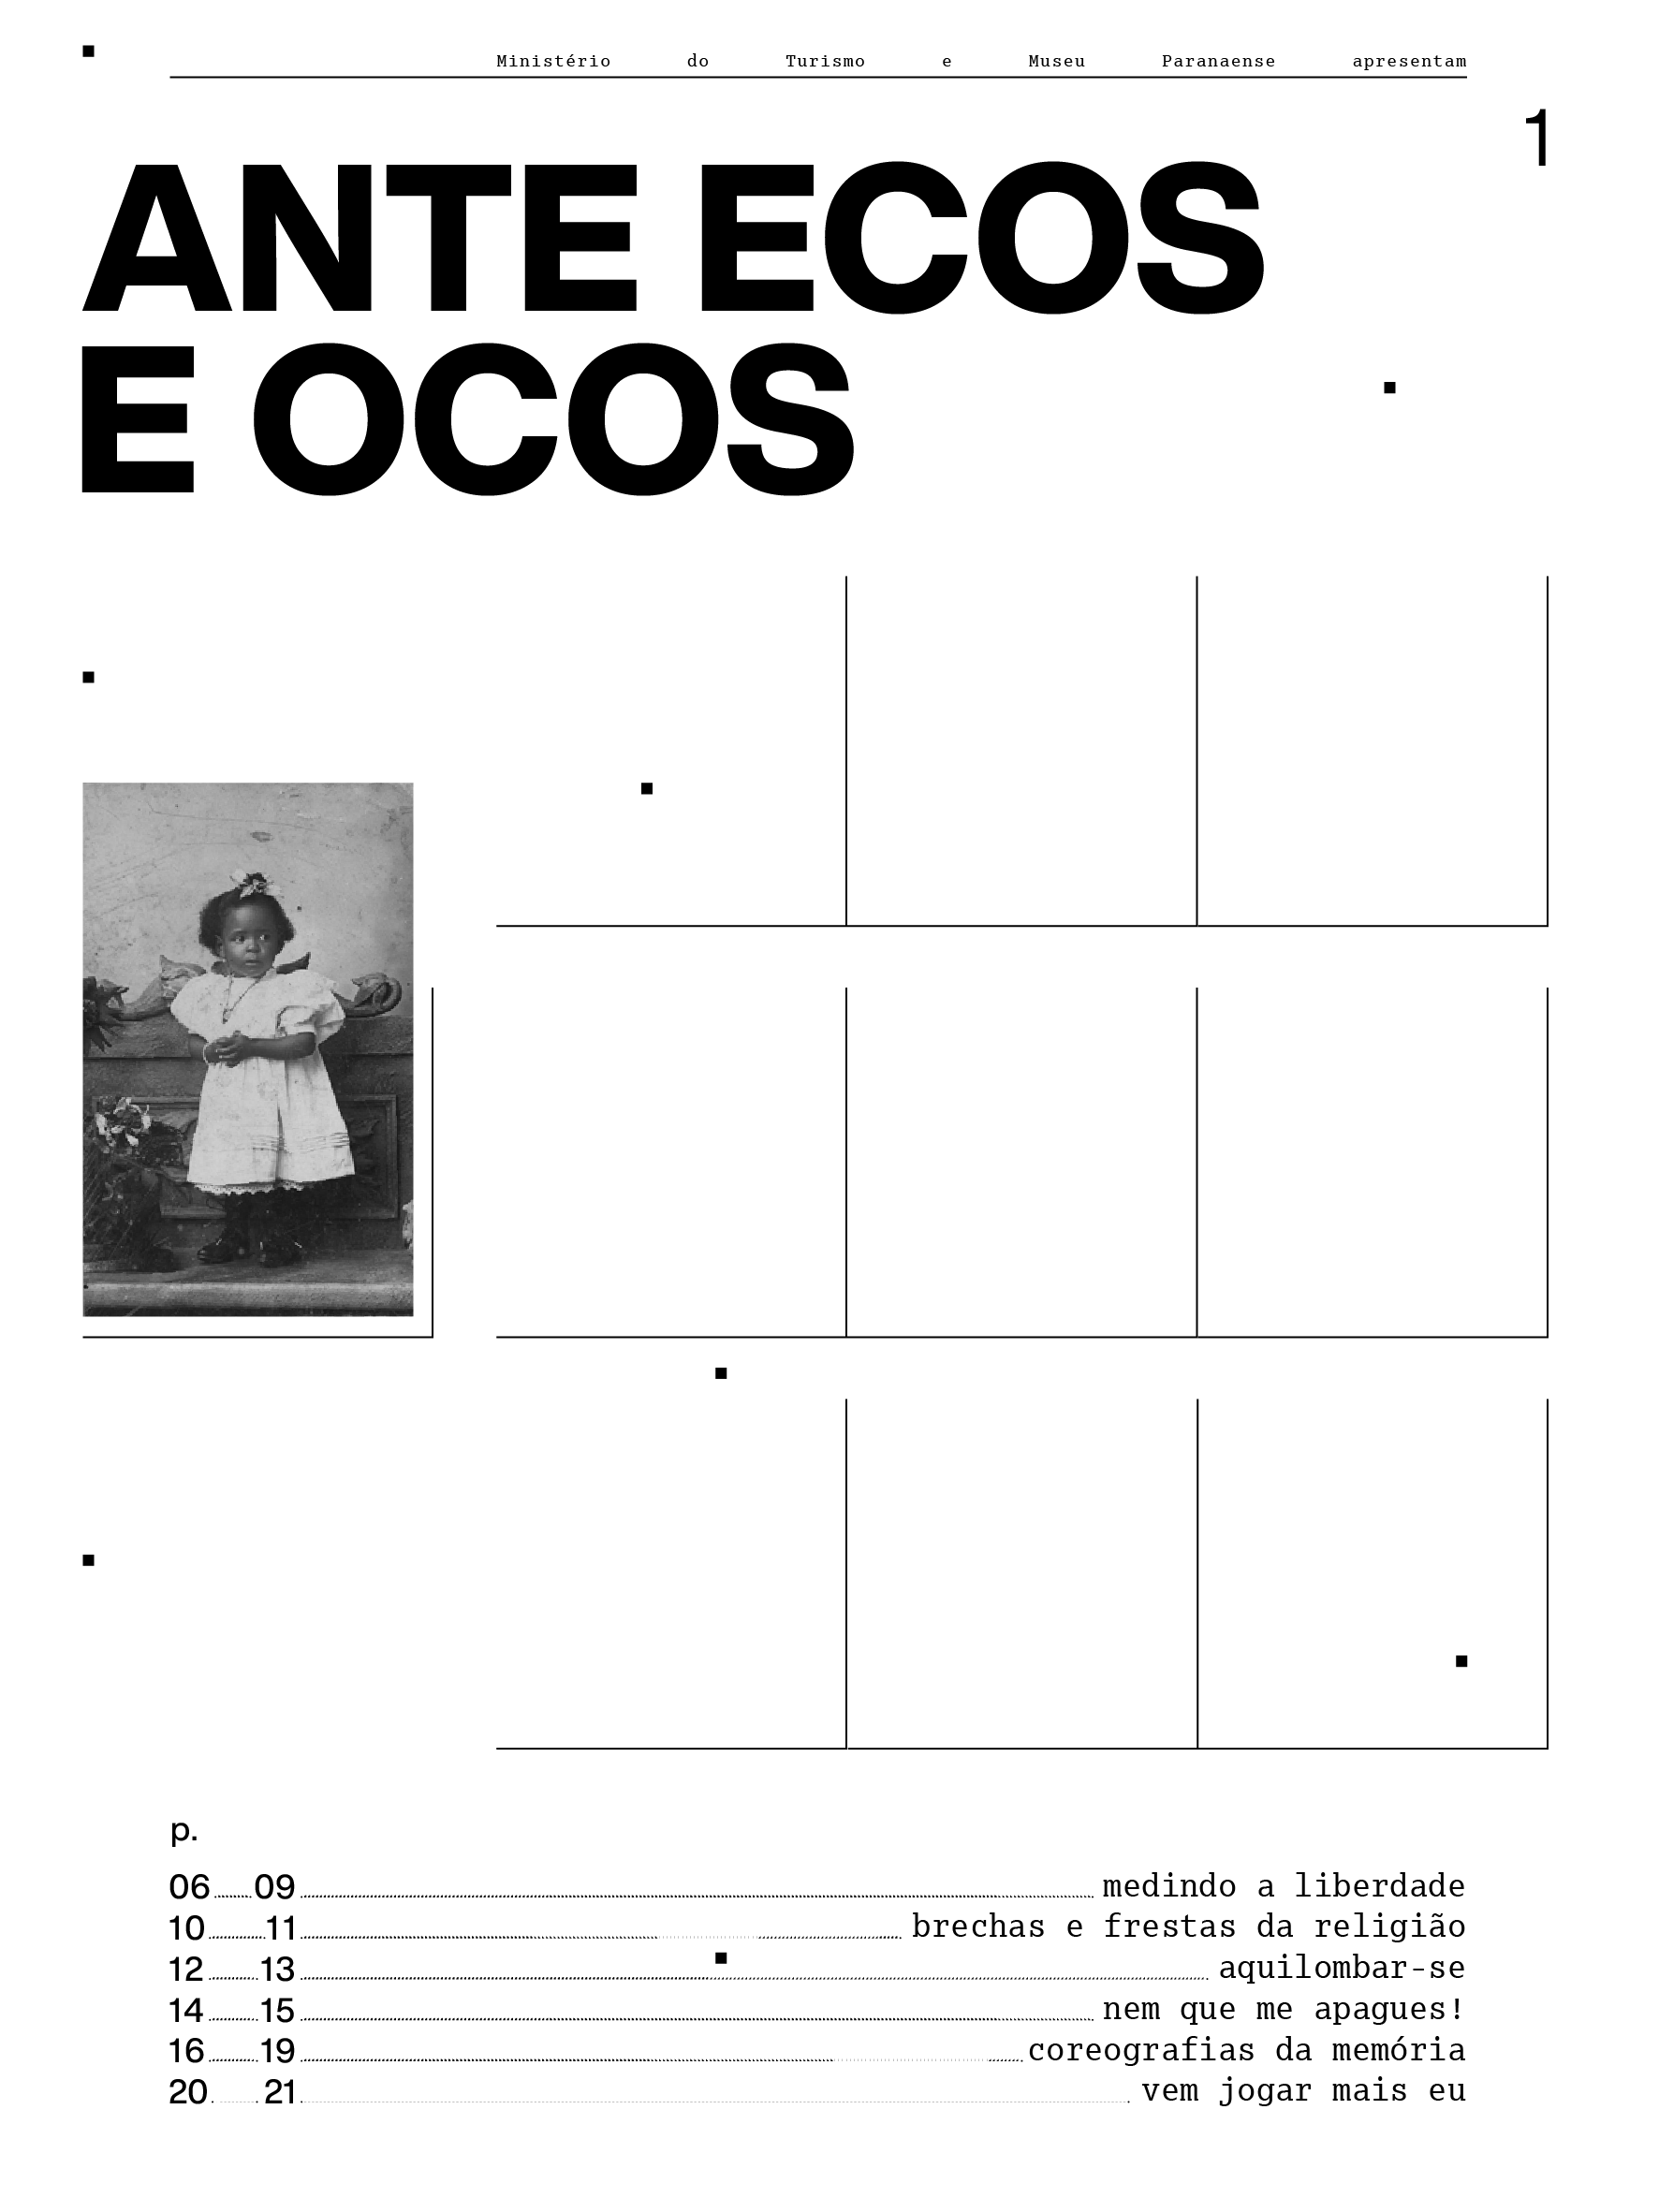 Capa do jornal da exposição "Ante ecos e ocos"